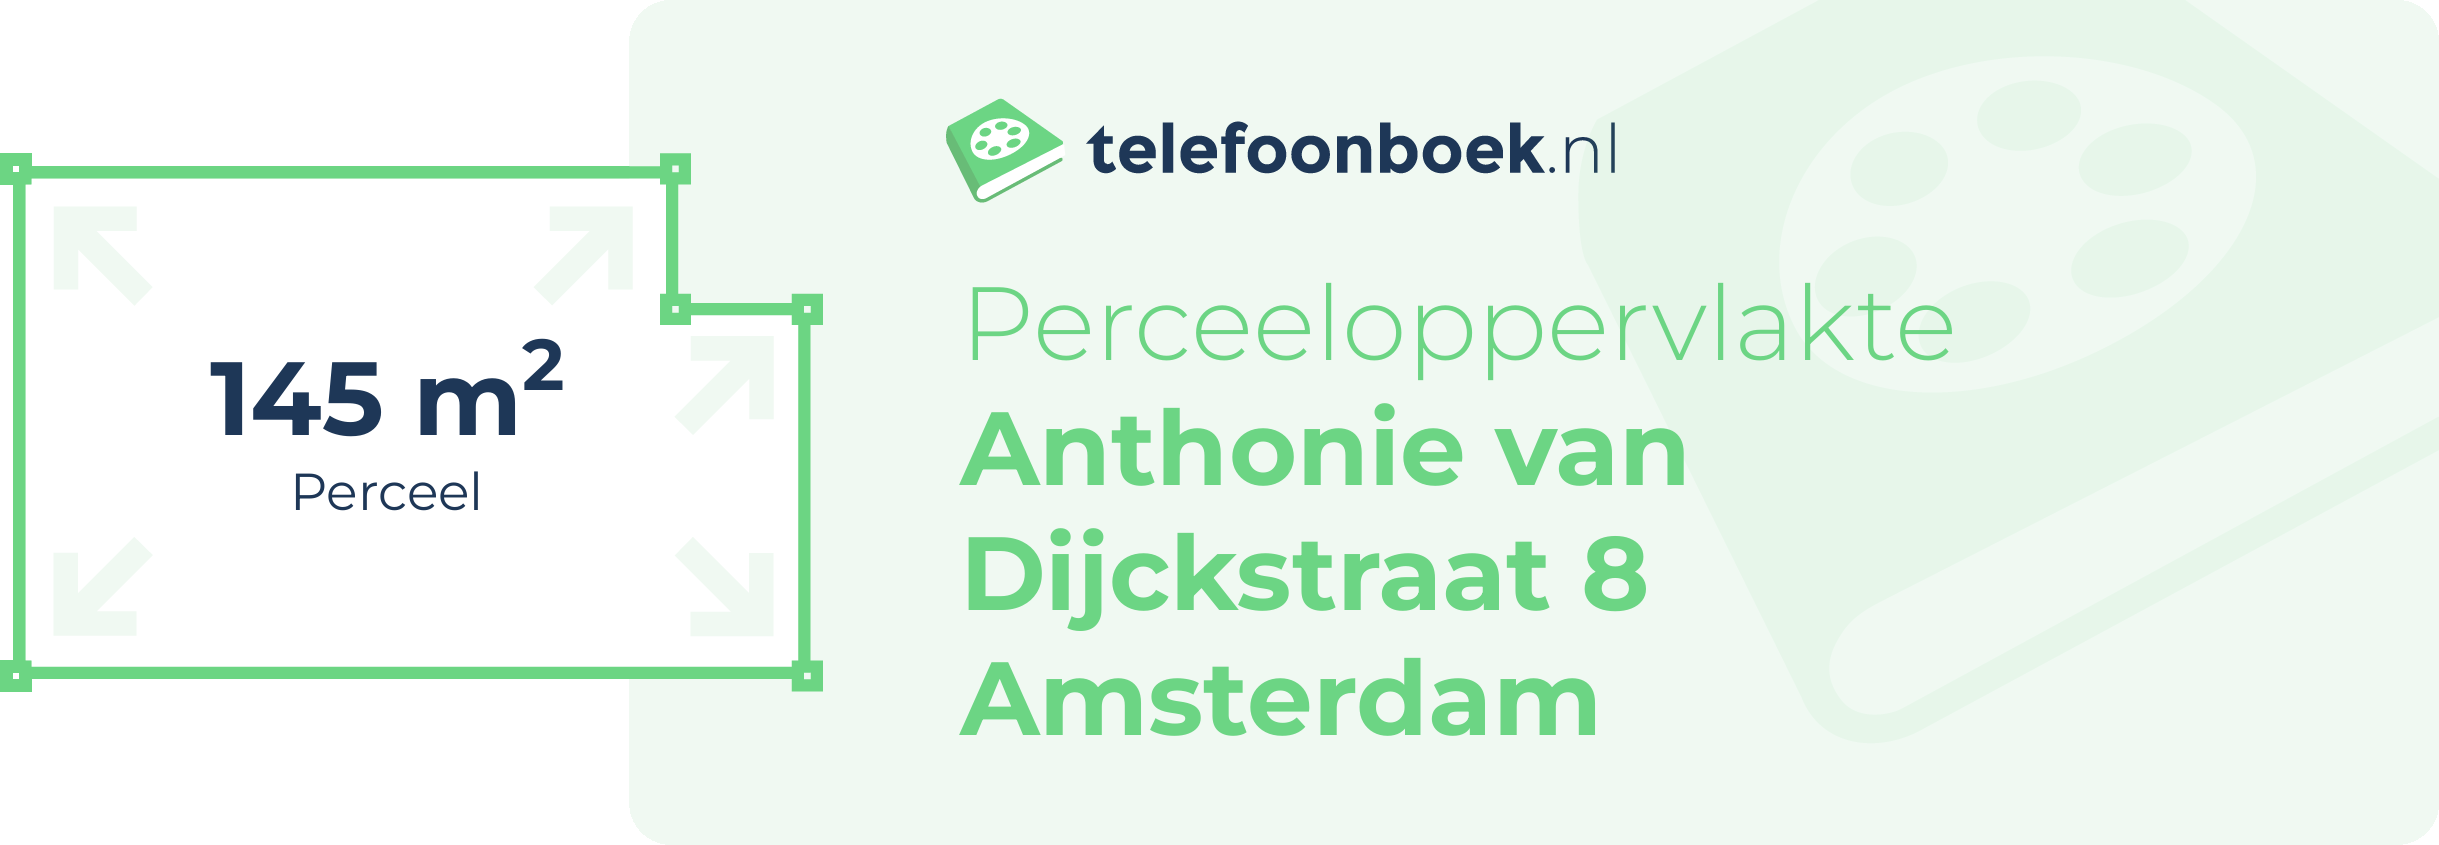 Perceeloppervlakte Anthonie Van Dijckstraat 8 Amsterdam